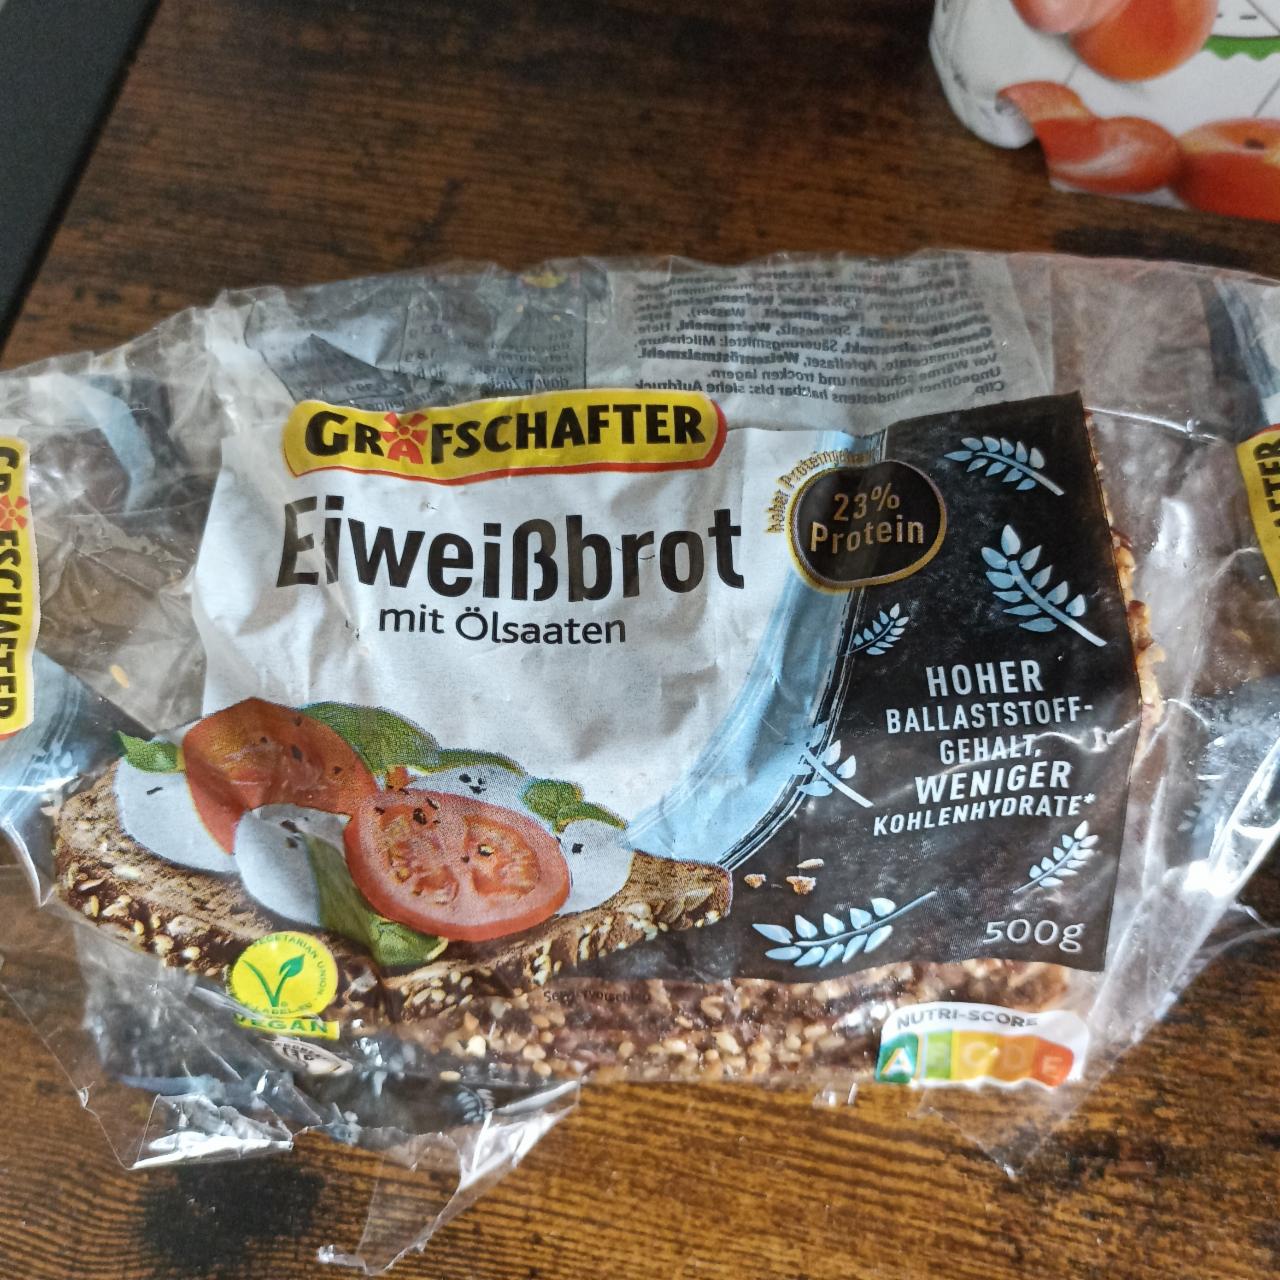 Фото - темный хлеб ржаной протеиновый Eiweißbrot lidl Grafschafter